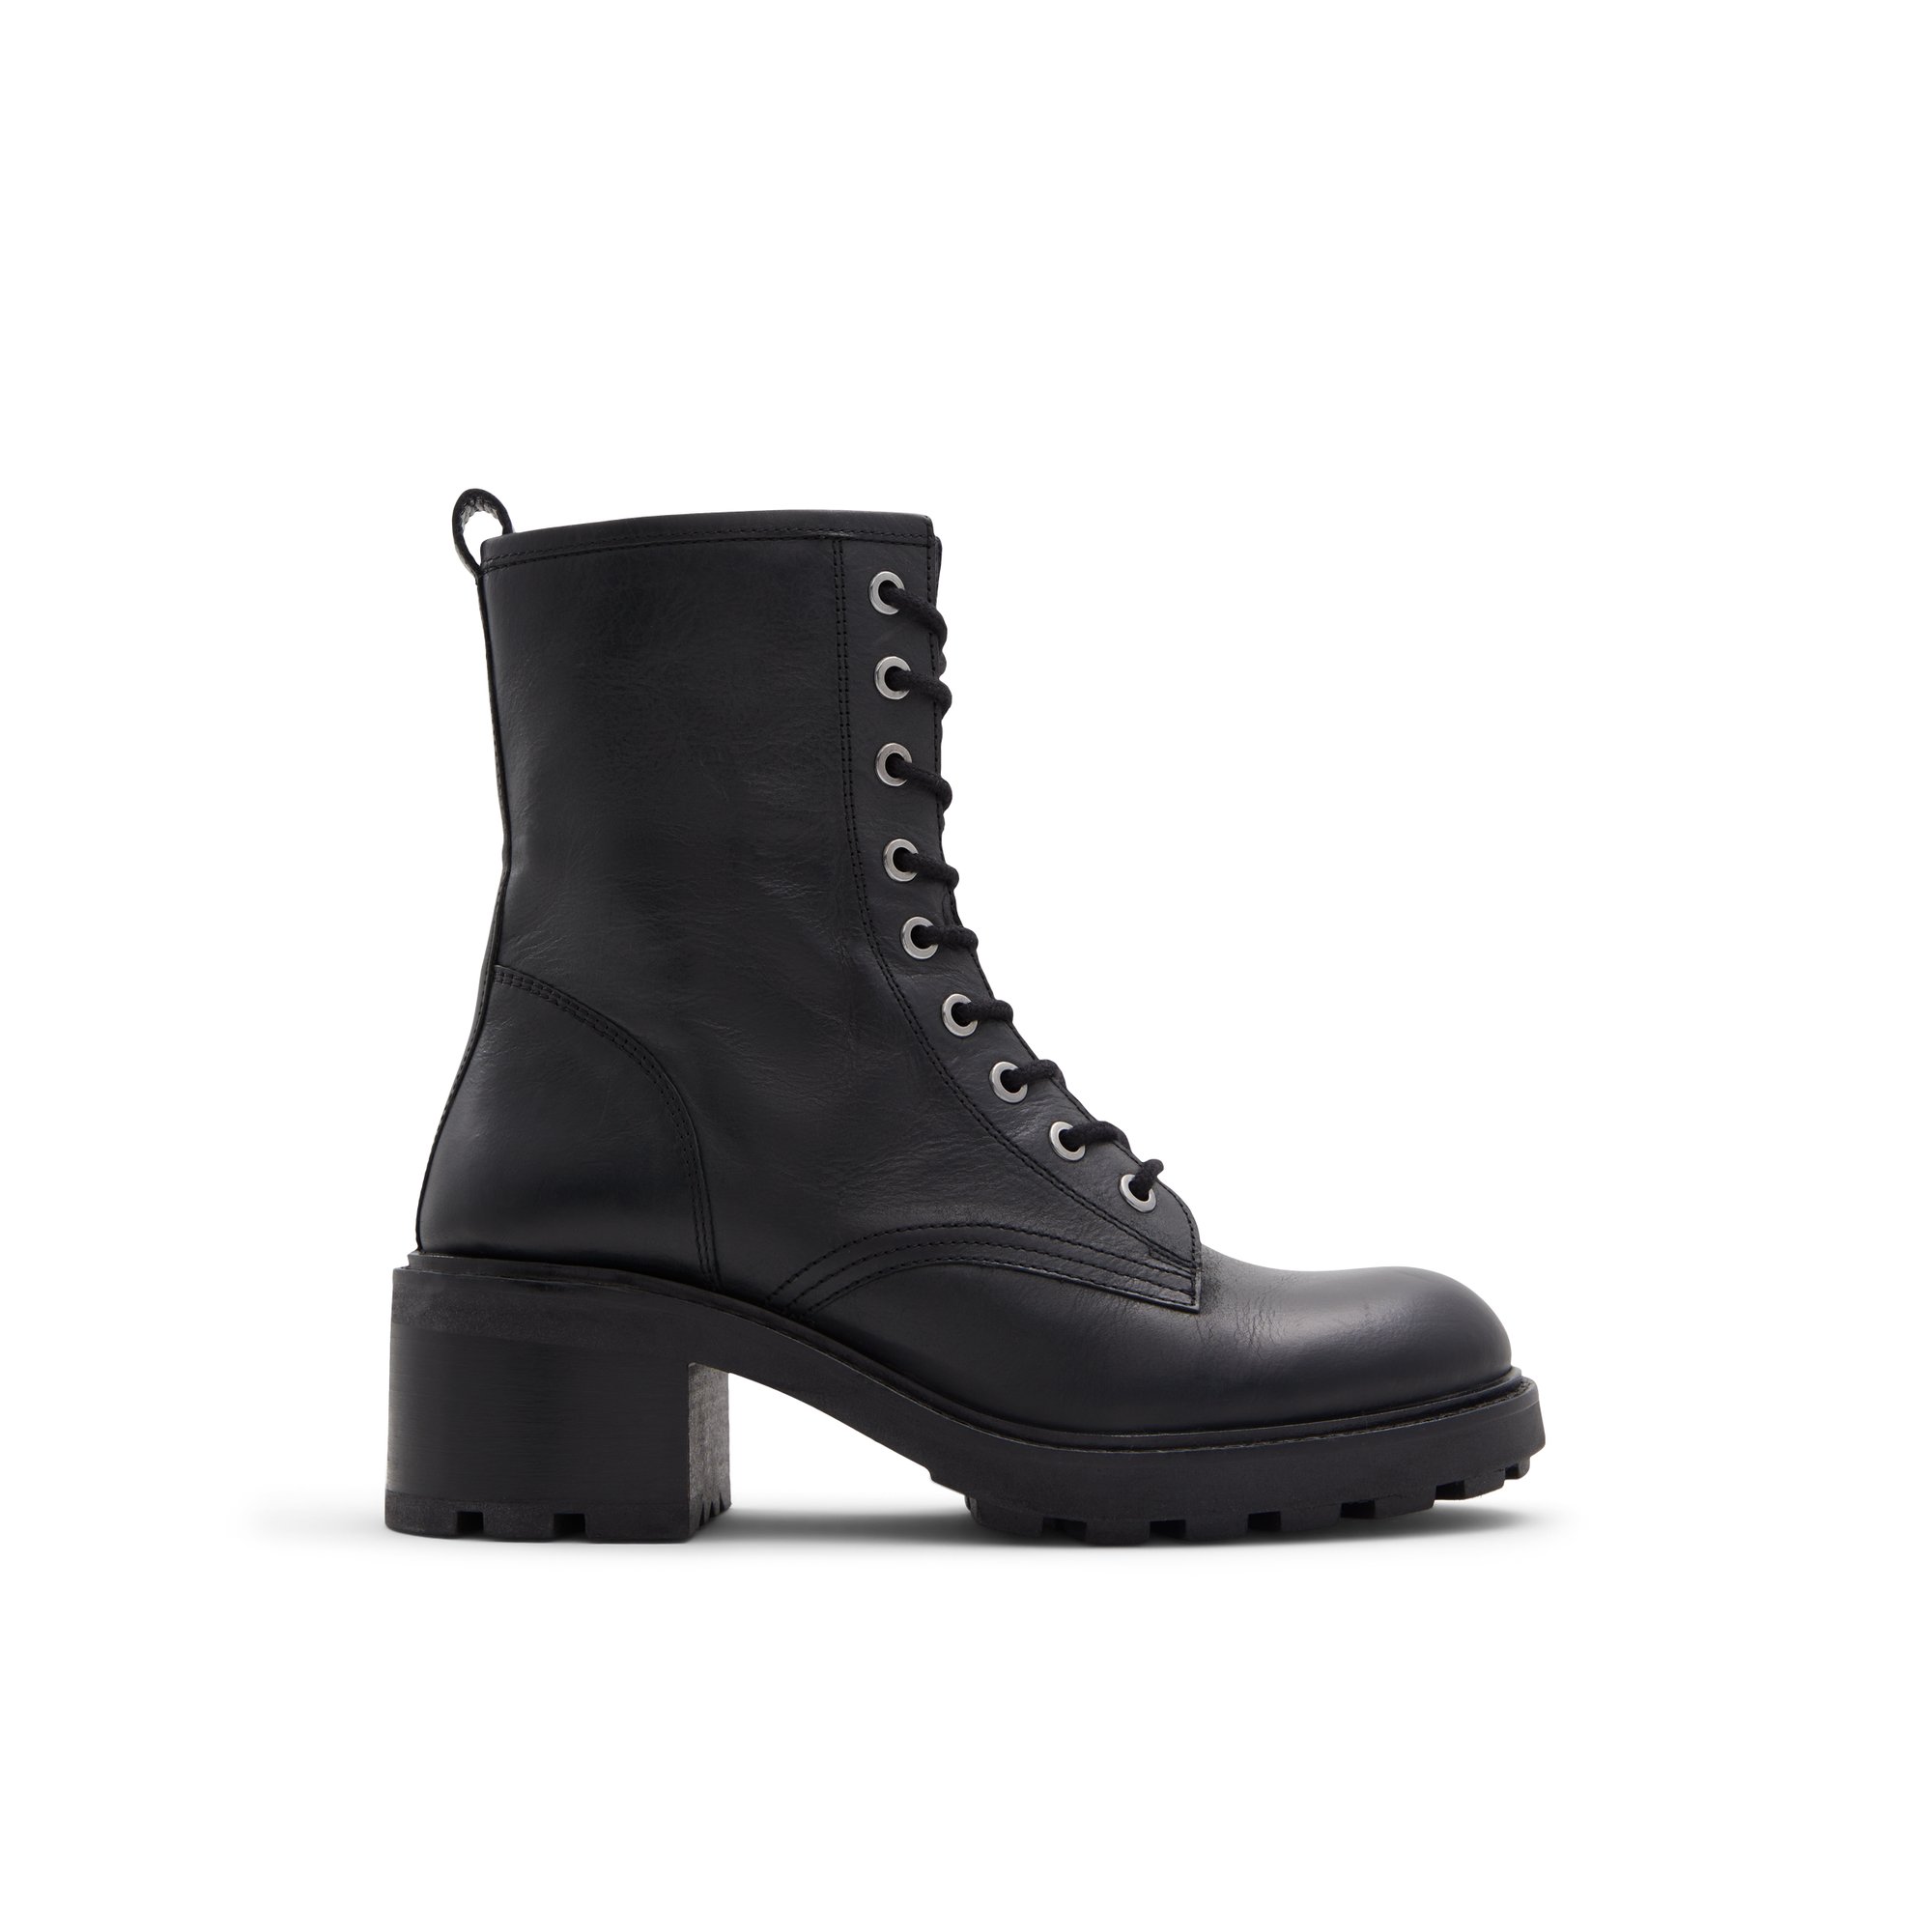 ALDO Meredelden - Women's Combat Boot - Black